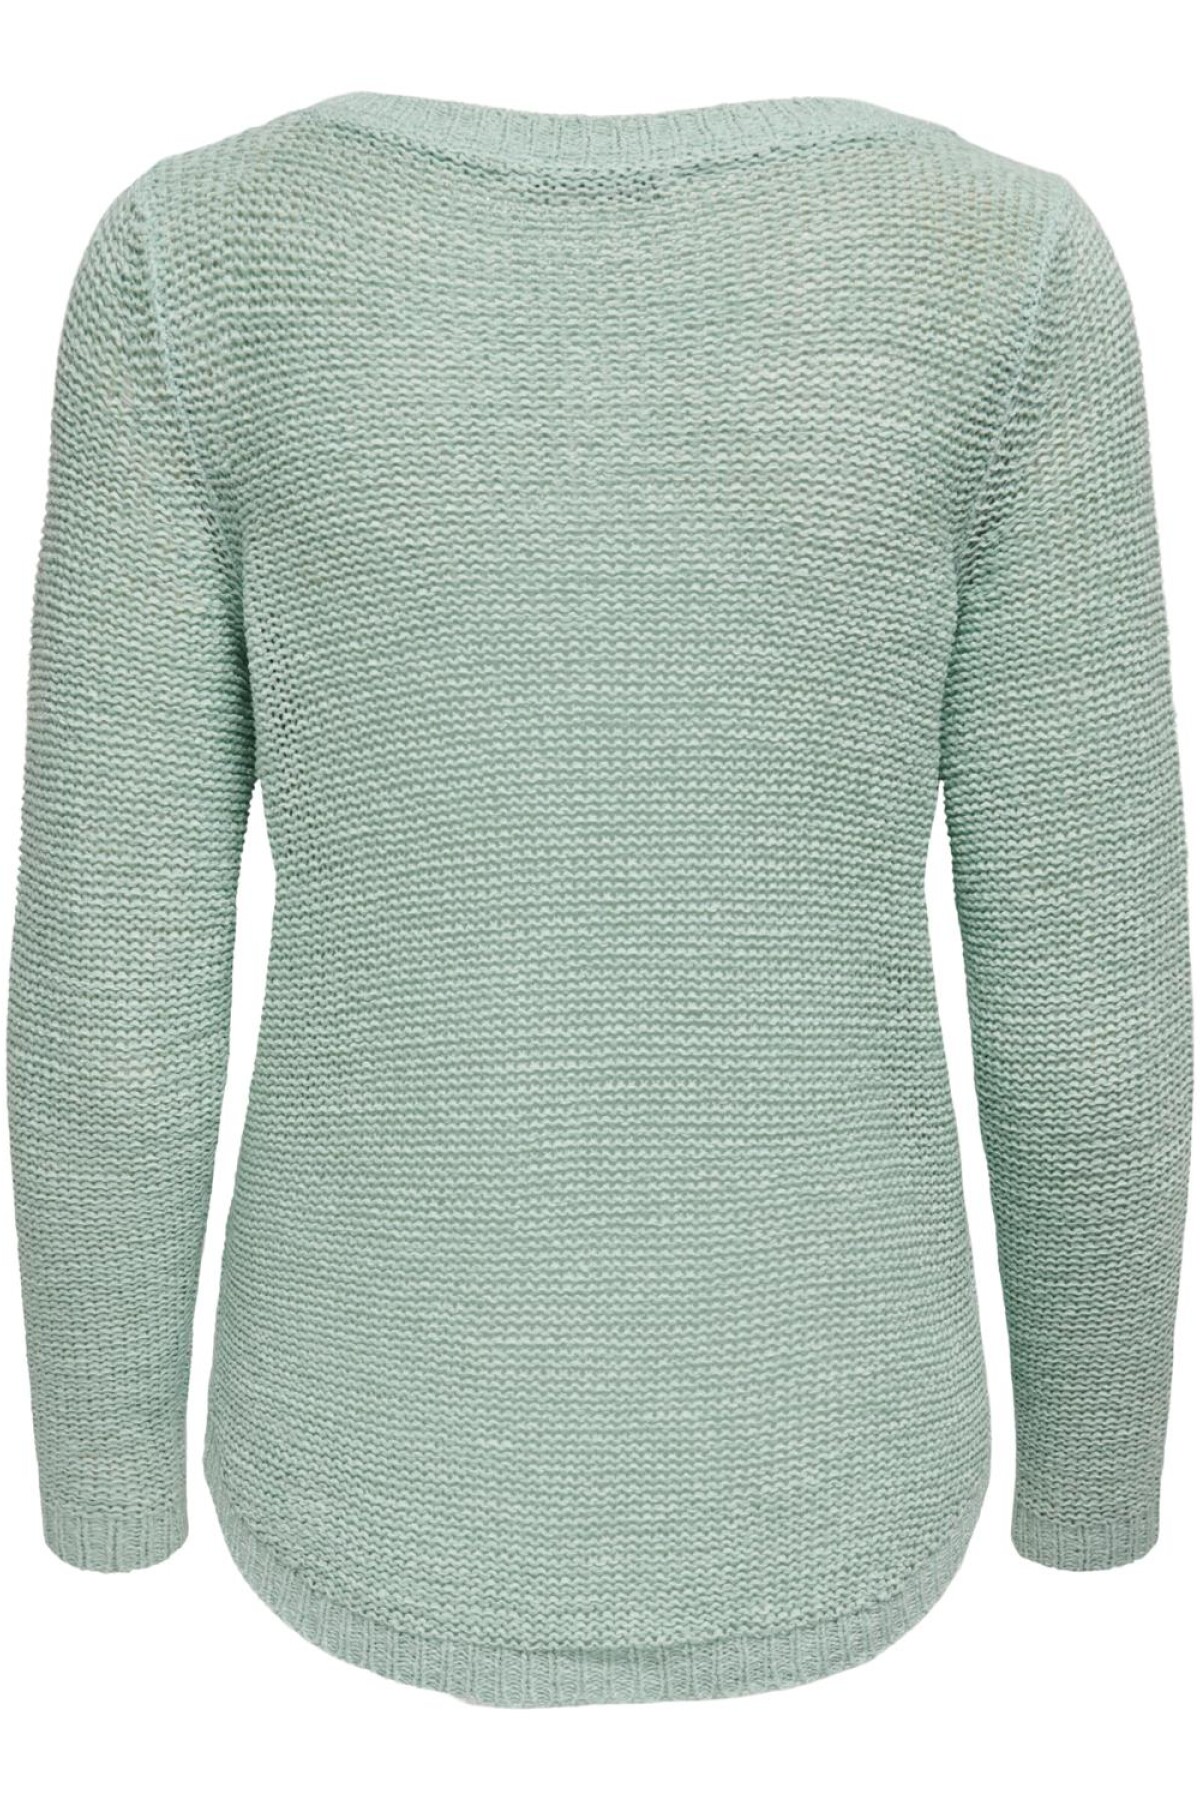 Sweater Geena Harbor Gray